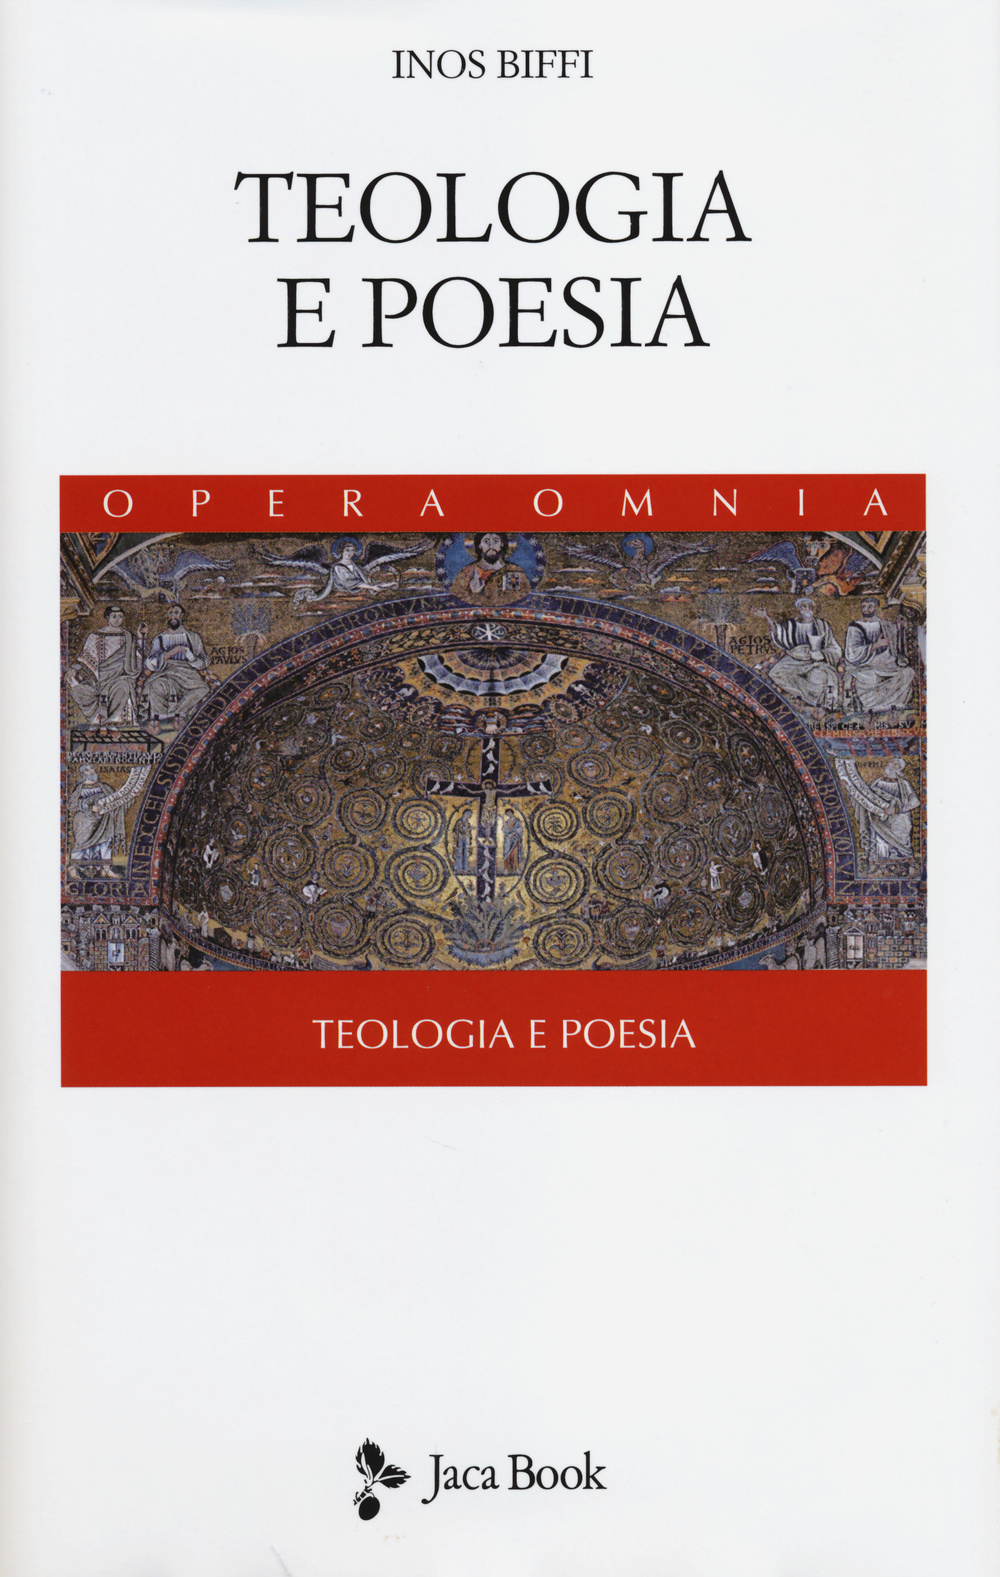 Image of Teologia e poesia